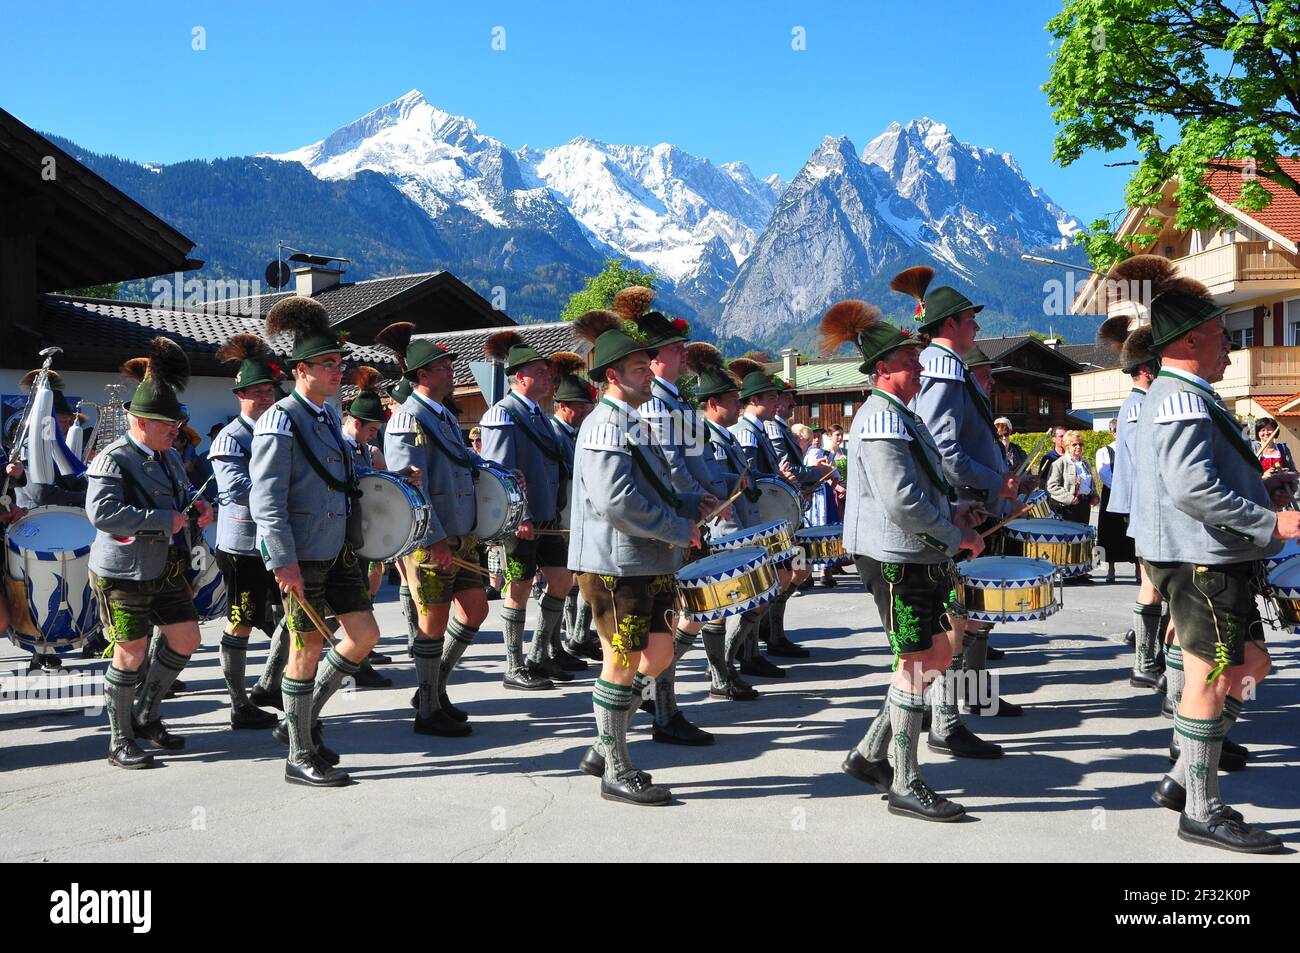 Baviera, costumi, tradizionale tradizionale tradizionale tradizionale tradizionale tradizionale tradizionale tradizionale tradizionale tradizionale tradizionale costume tradizionale Foto Stock